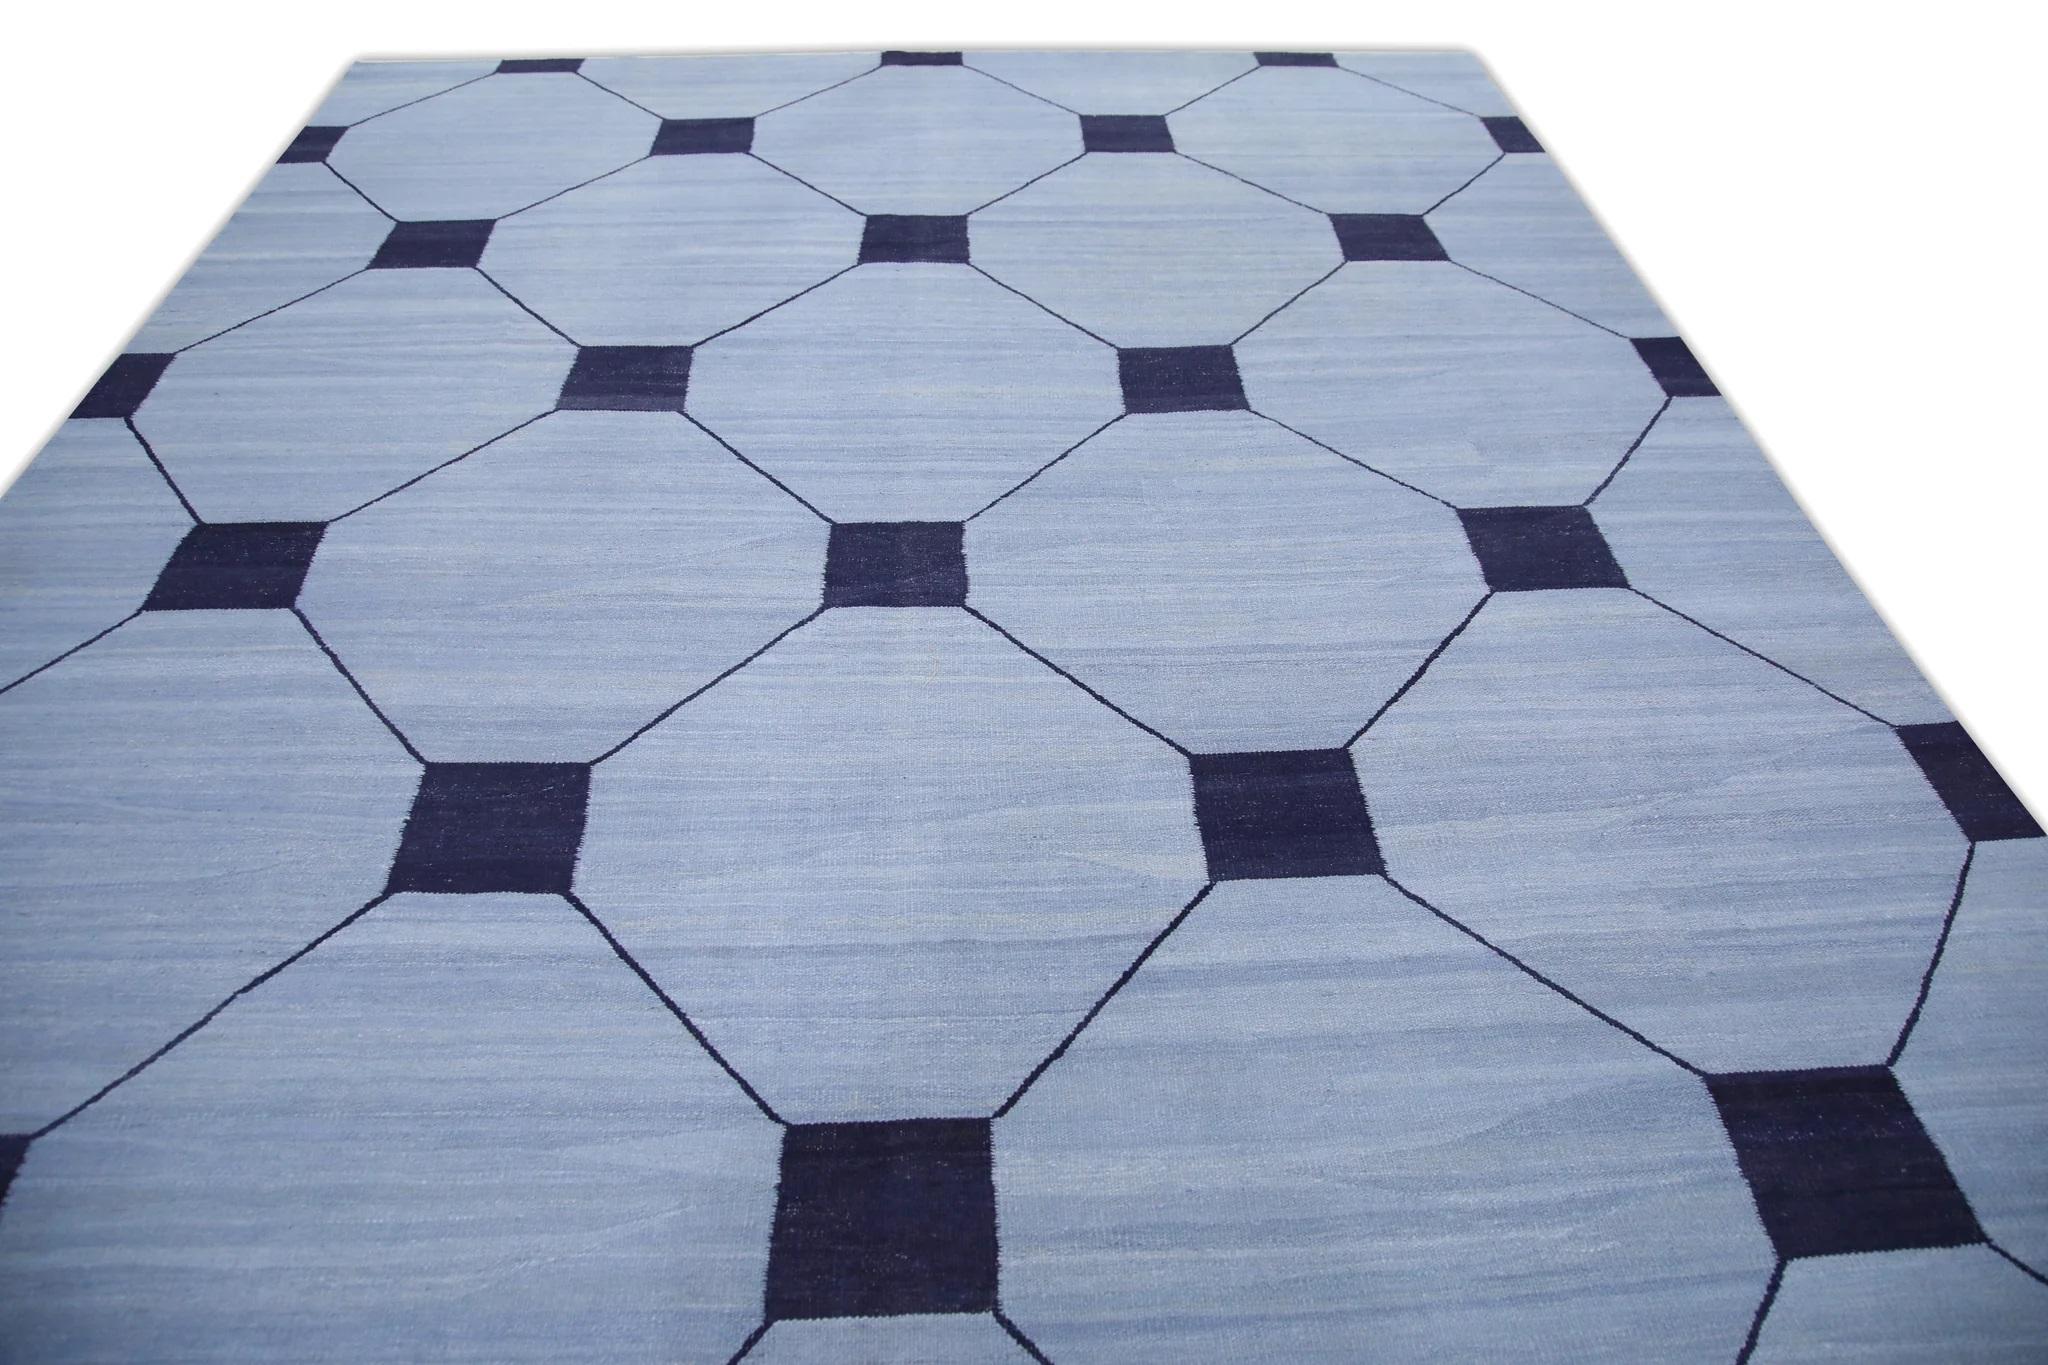 Vegetable Dyed Blue Flatweave Handmade Wool Rug in Navy Geometric Design 9' x 12'7